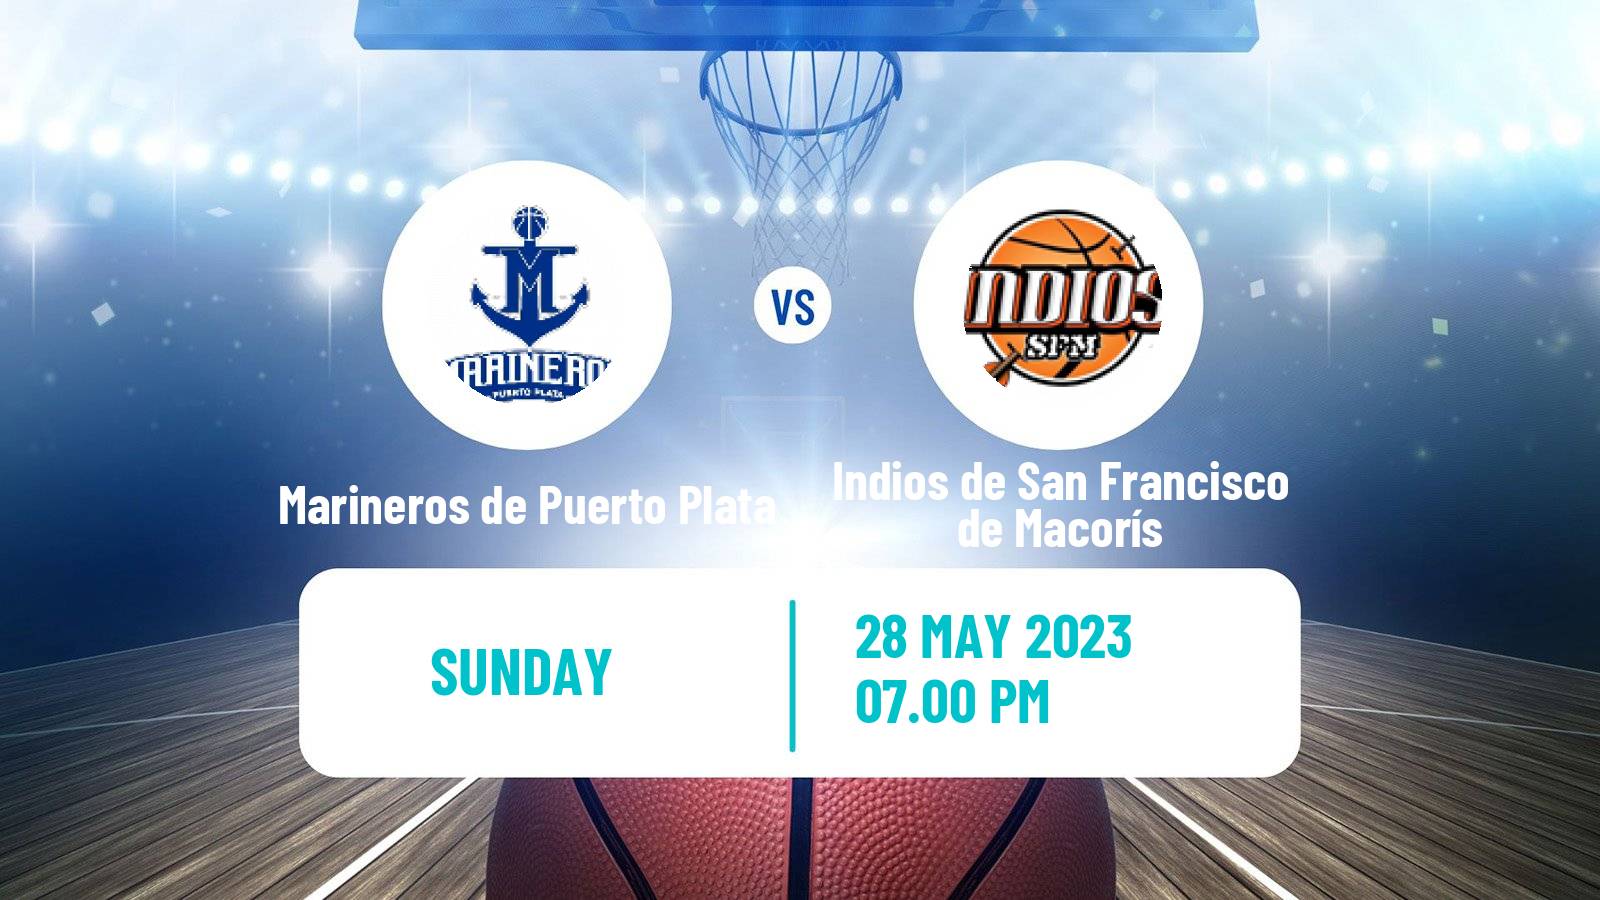 Basketball Dominican Republic LNB Basketball Marineros de Puerto Plata - Indios de San Francisco de Macorís